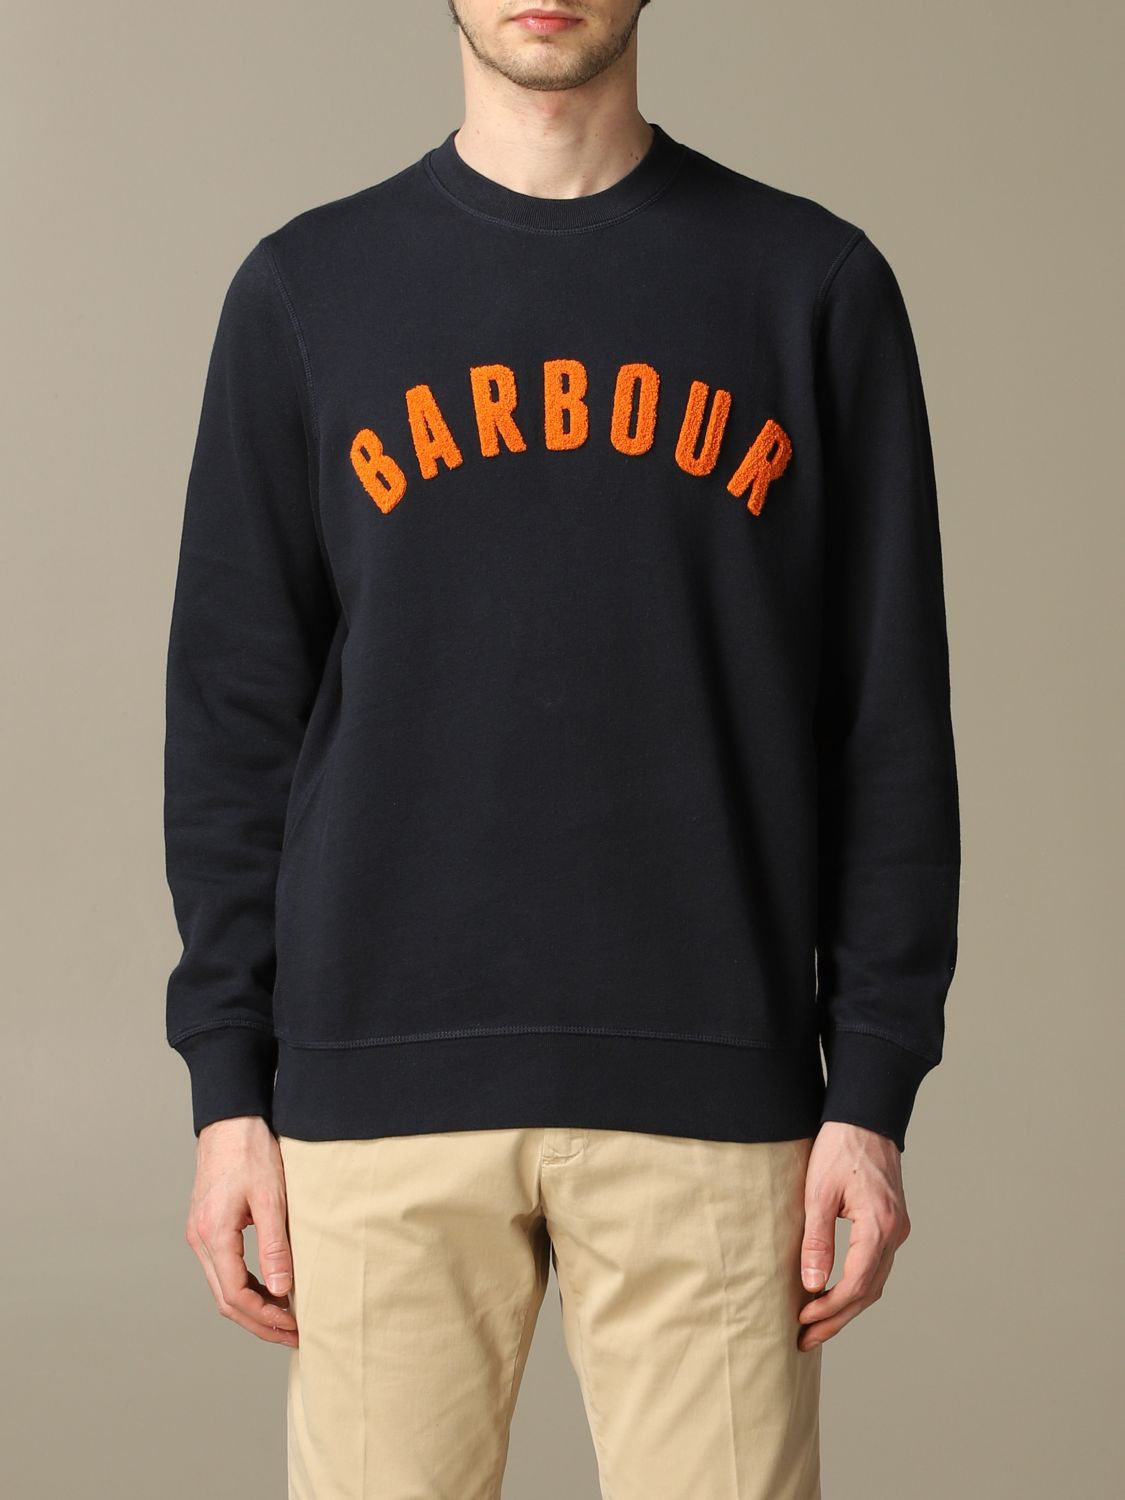 Sweatshirt Barbour BAFEL0382 Giglio EN